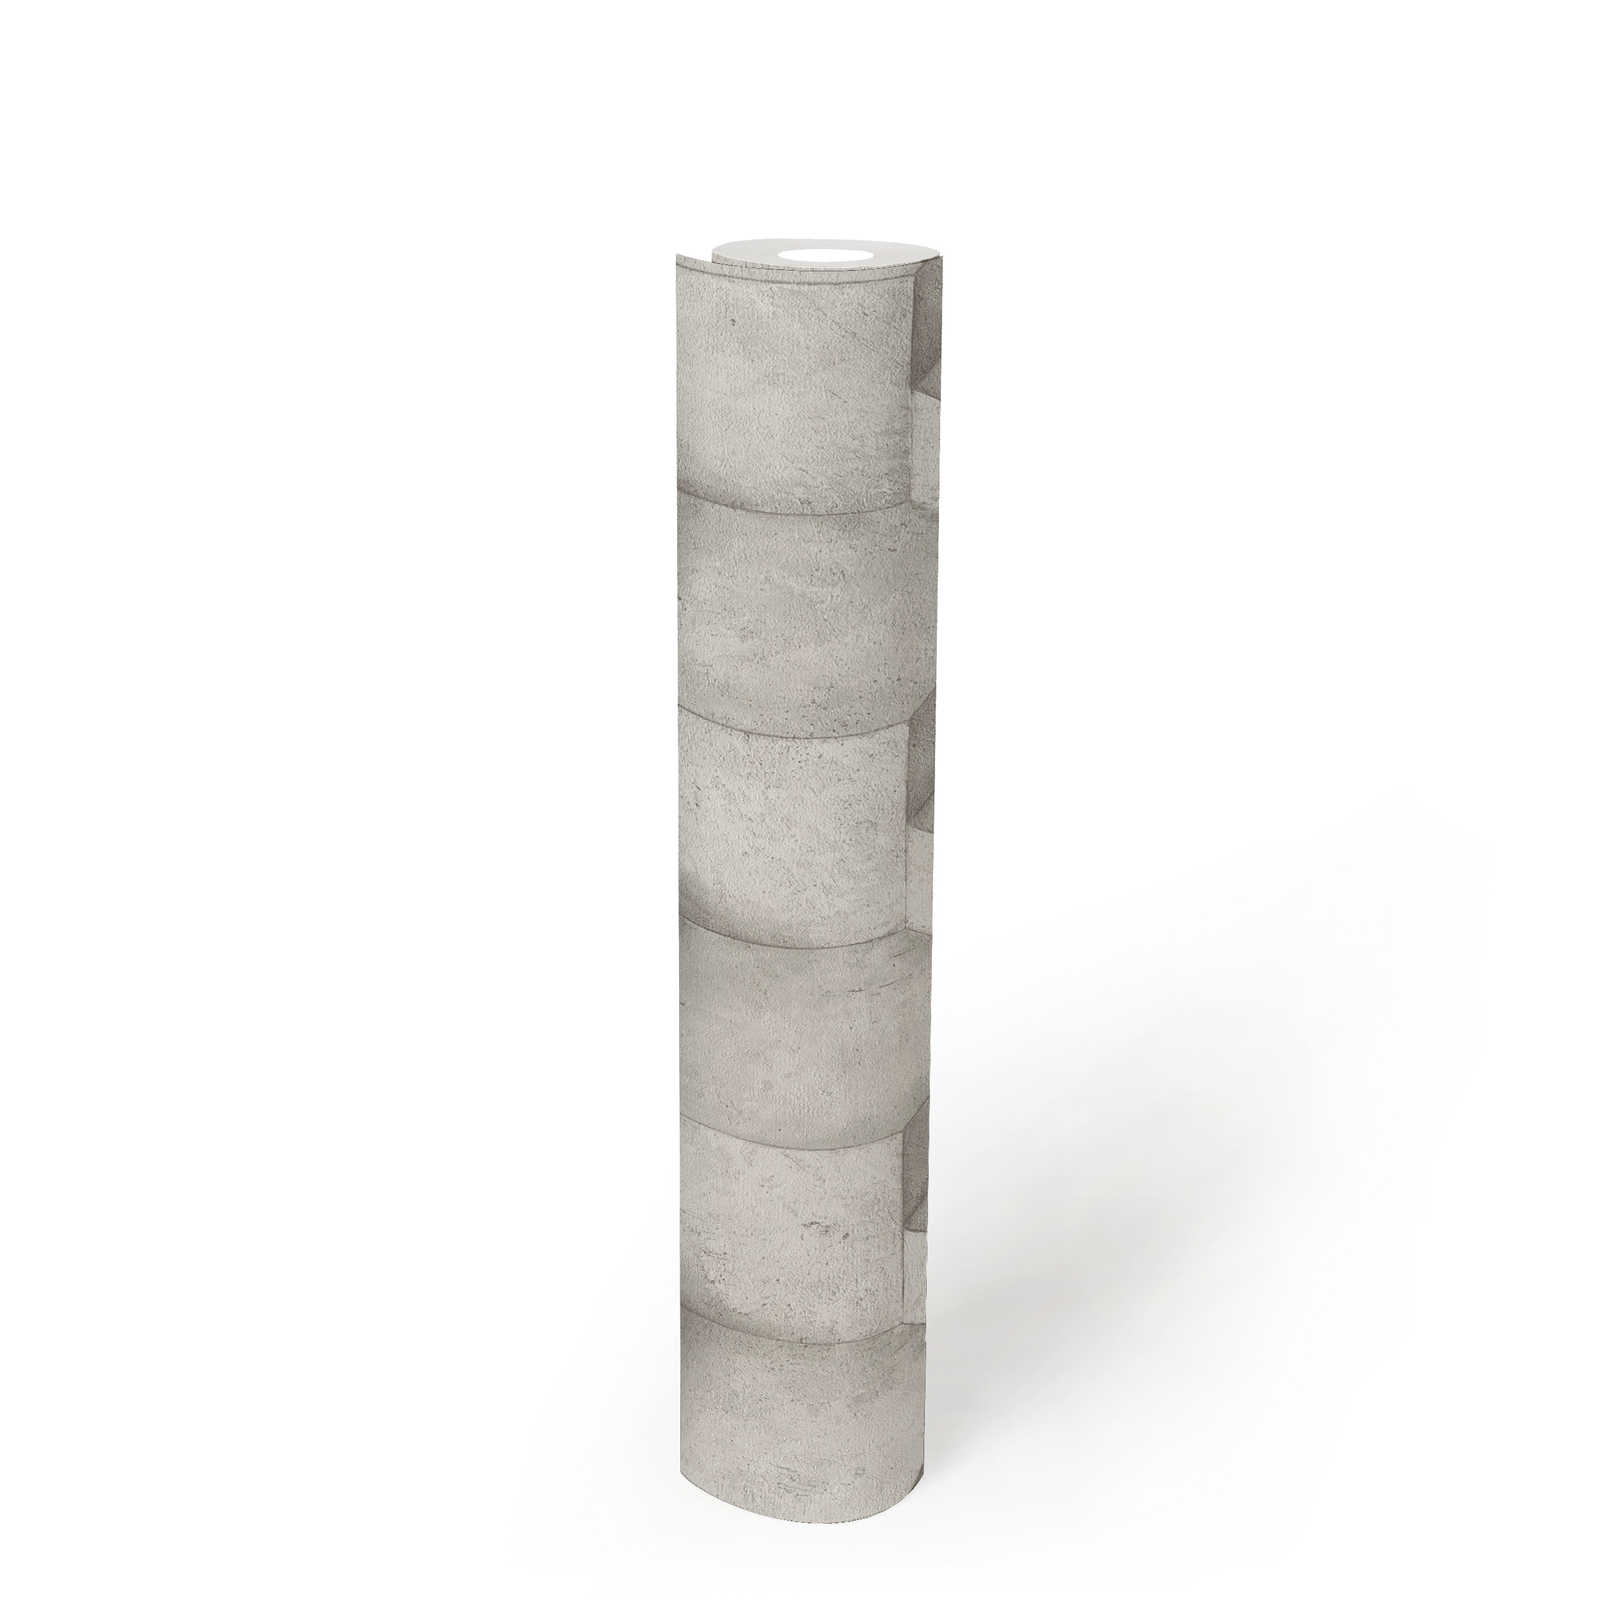             3D Tapete Kalkstein mit Strukturdesign – Weiß, Grau
        